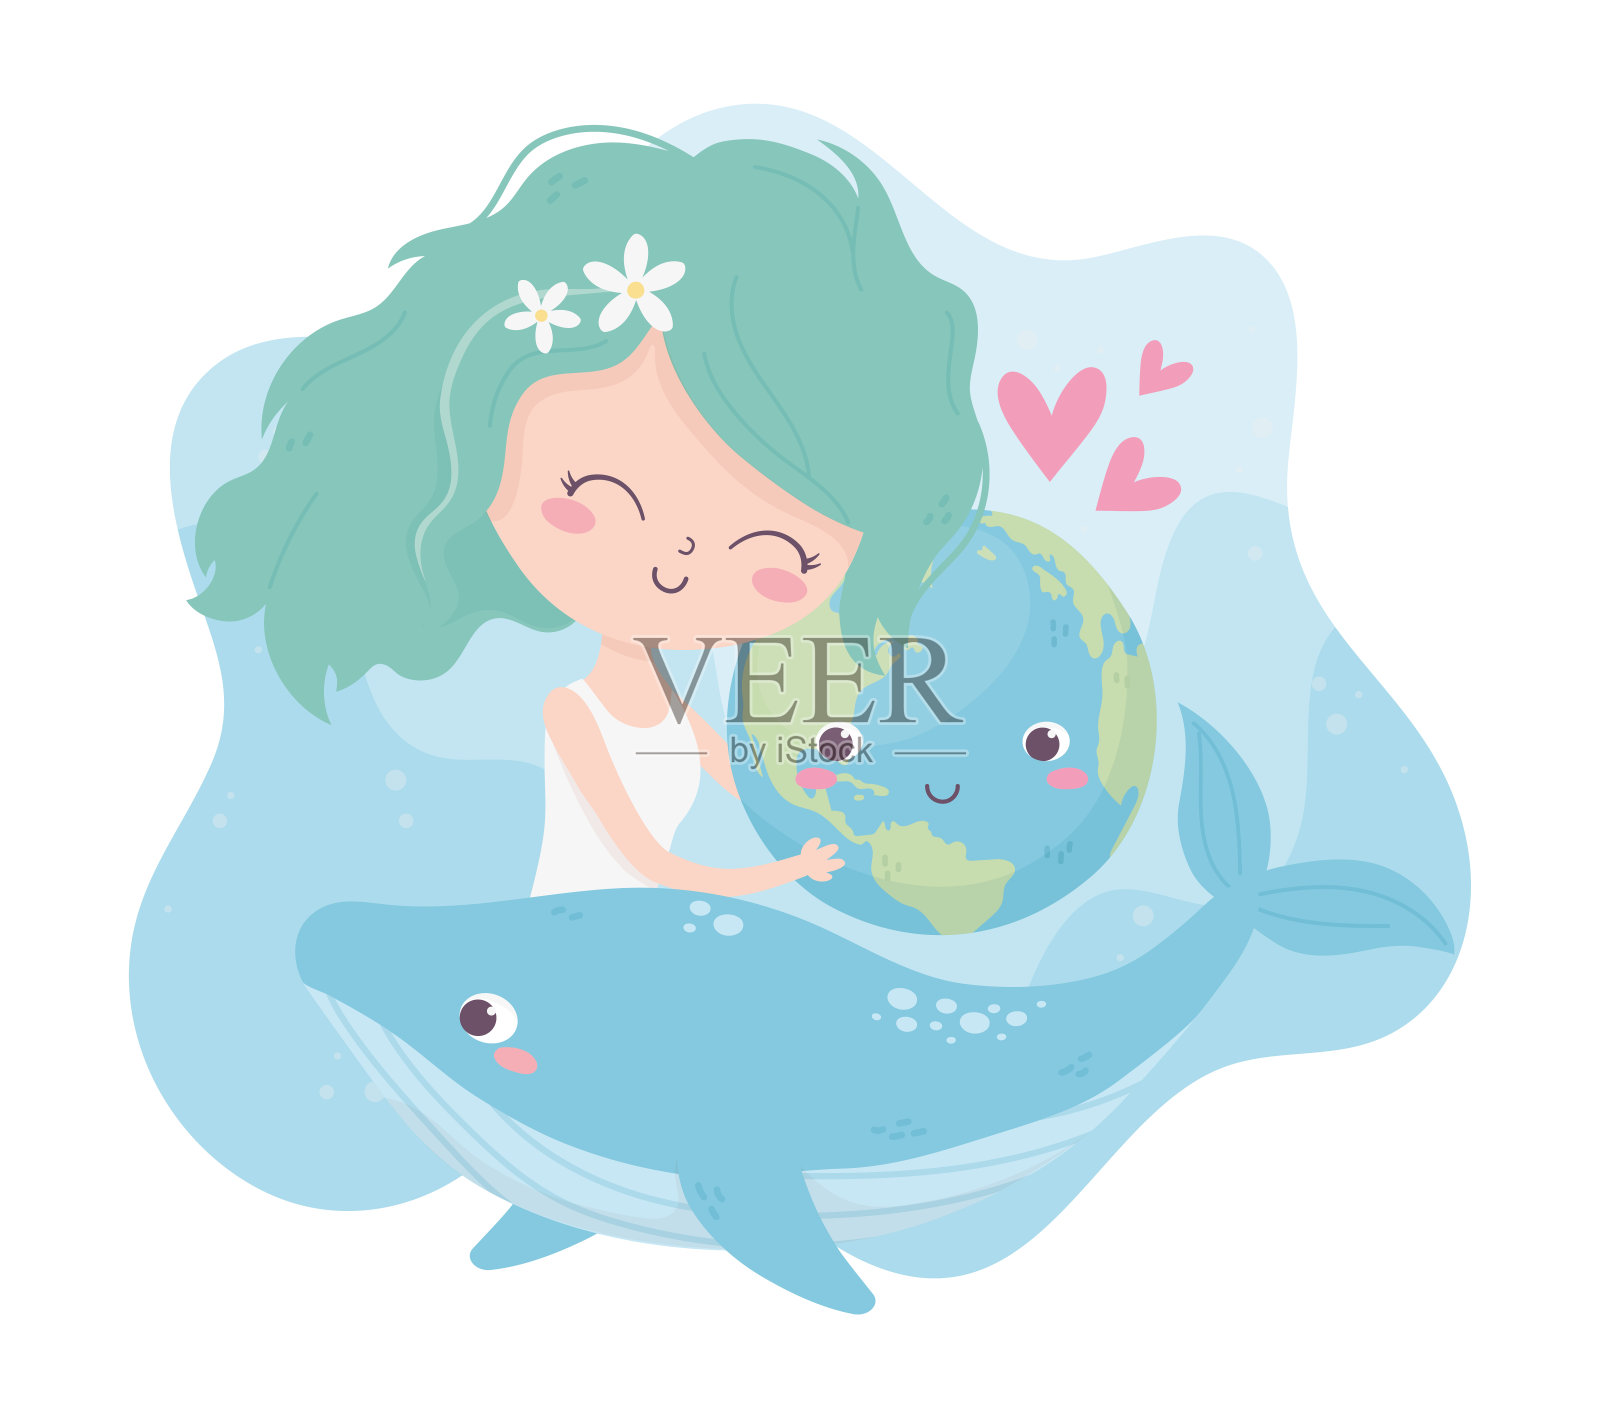 可爱的女孩拥抱世界鲸爱心环境生态插画图片素材